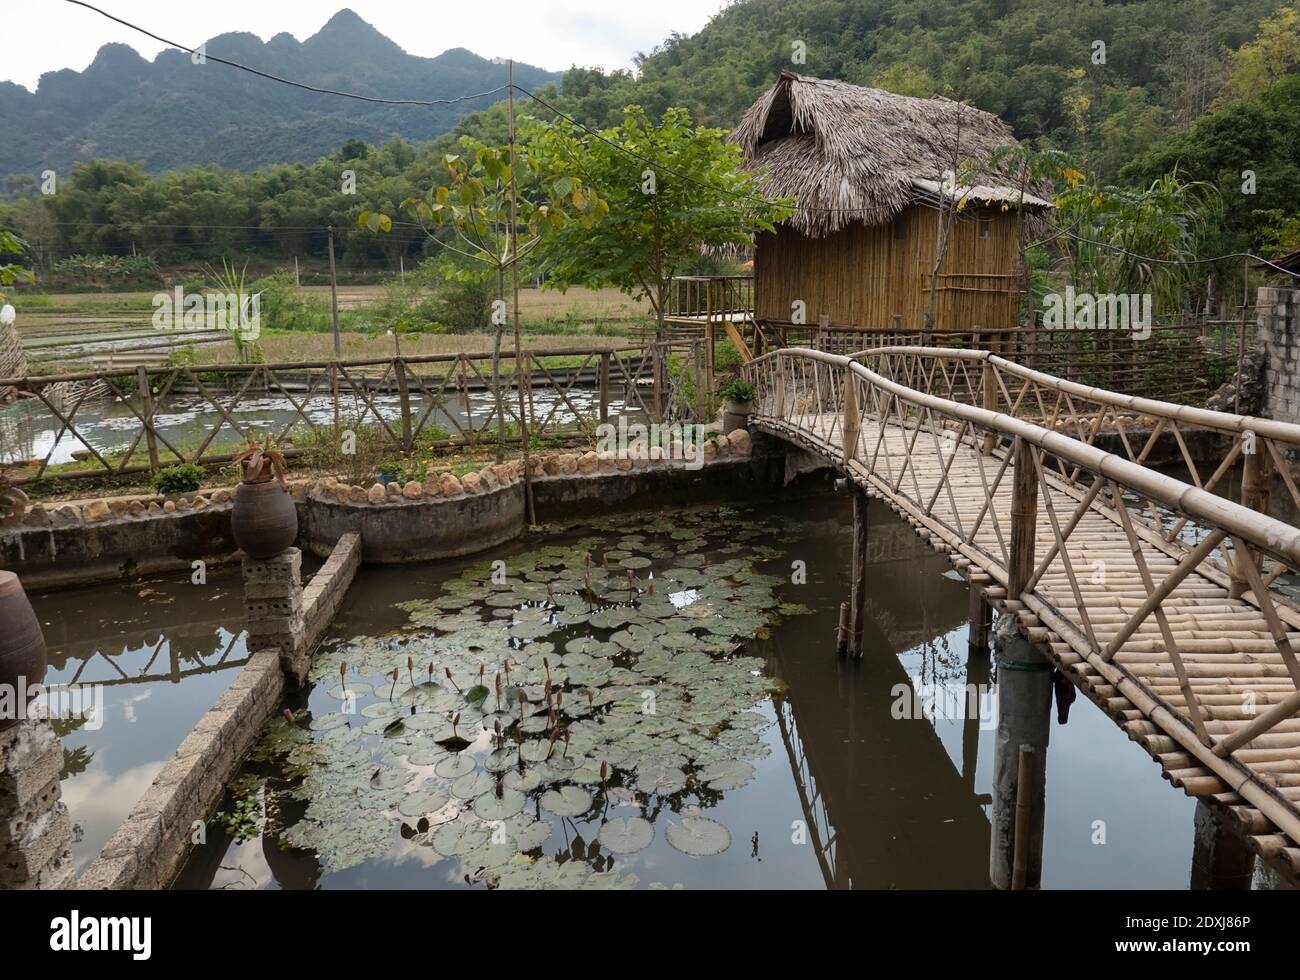 Pont en bambou au-dessus d'un étang avec des nénuphars Banque D'Images